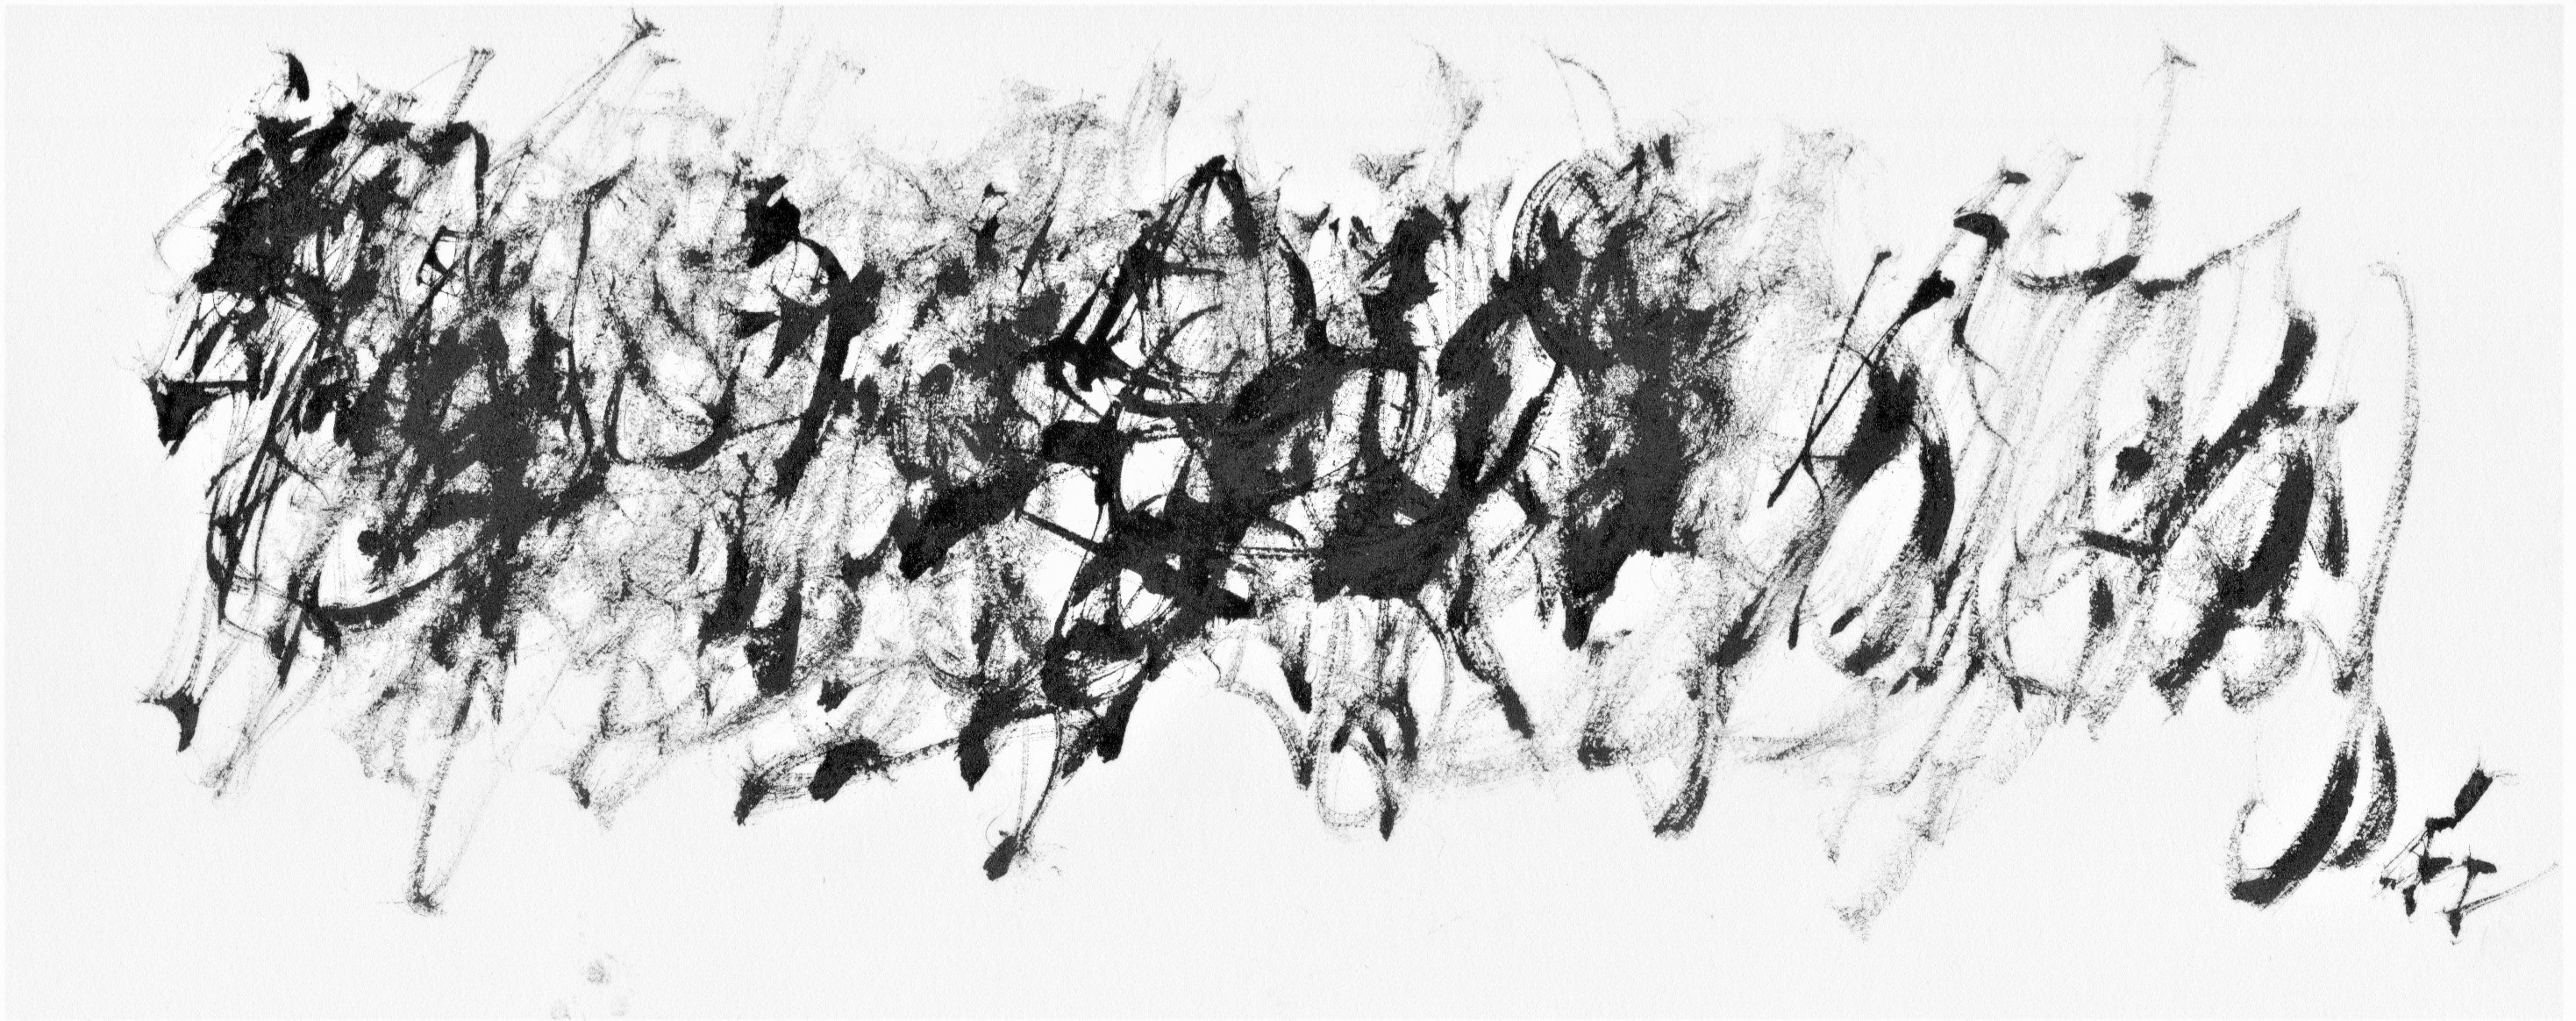 Exposition Délires et rythmes lents, Jacques Mandelbrojt, encre sur papier canson,  2018